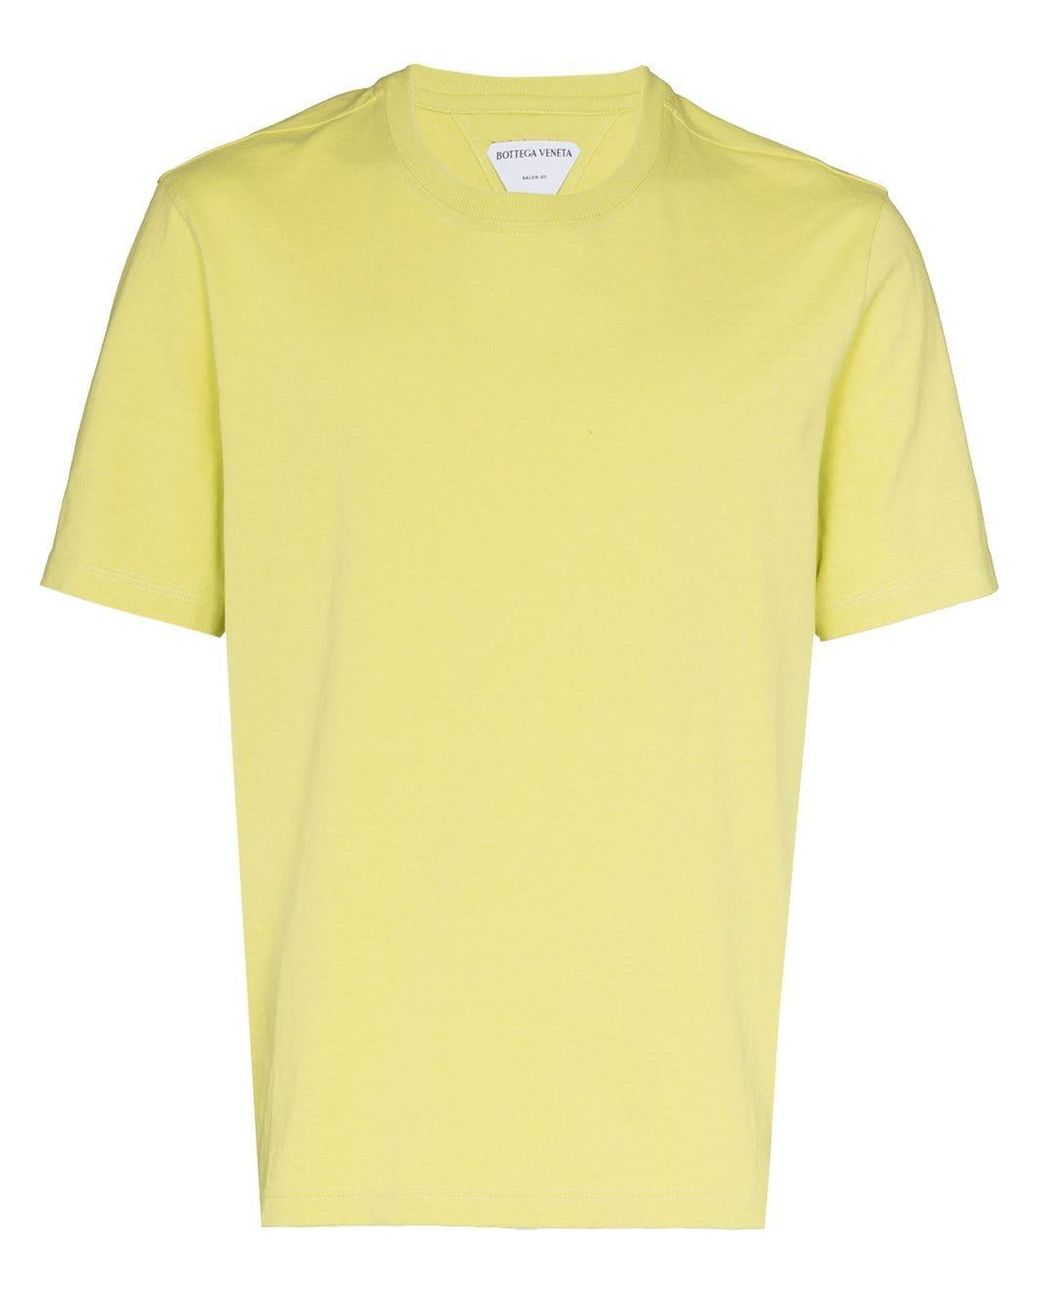 Bottega Veneta Short-sleeve Cotton T-shirt in Green for Men - Lyst